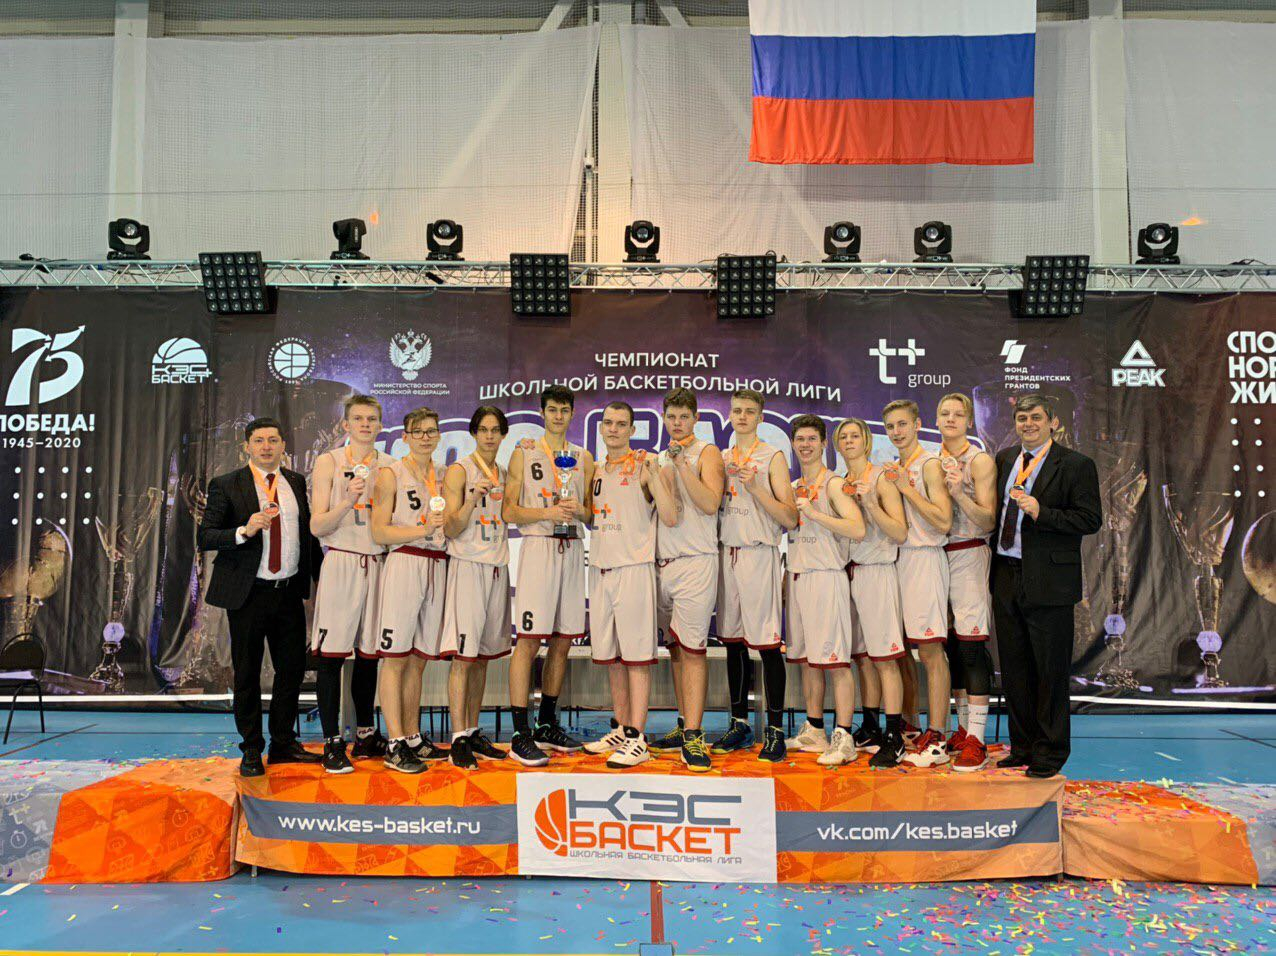 Юные нижегородцы стали серебряными призерами регионального этапа чемпионата школьной баскетбольной лиги